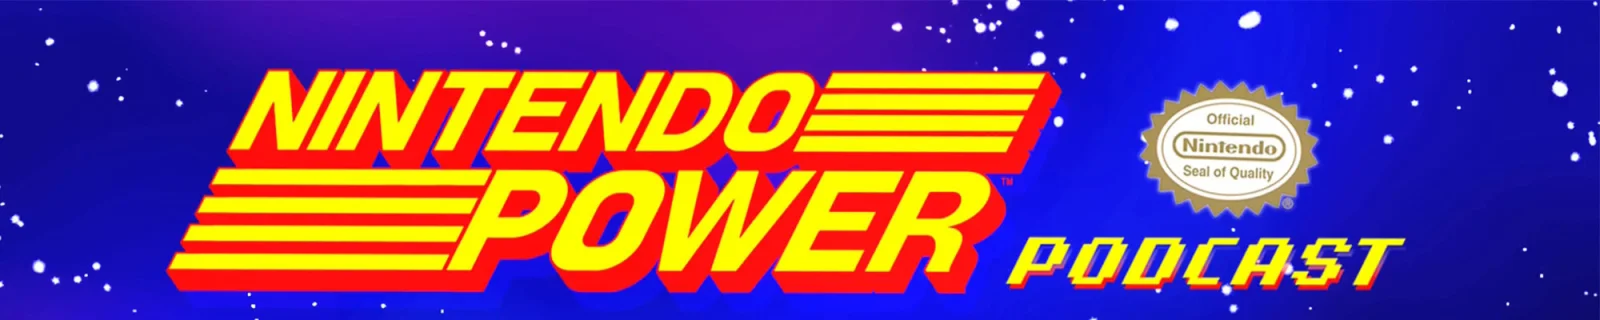 你最喜欢的《大金刚》游戏是哪一作？| 《Nintendo Power》播客Ep.5